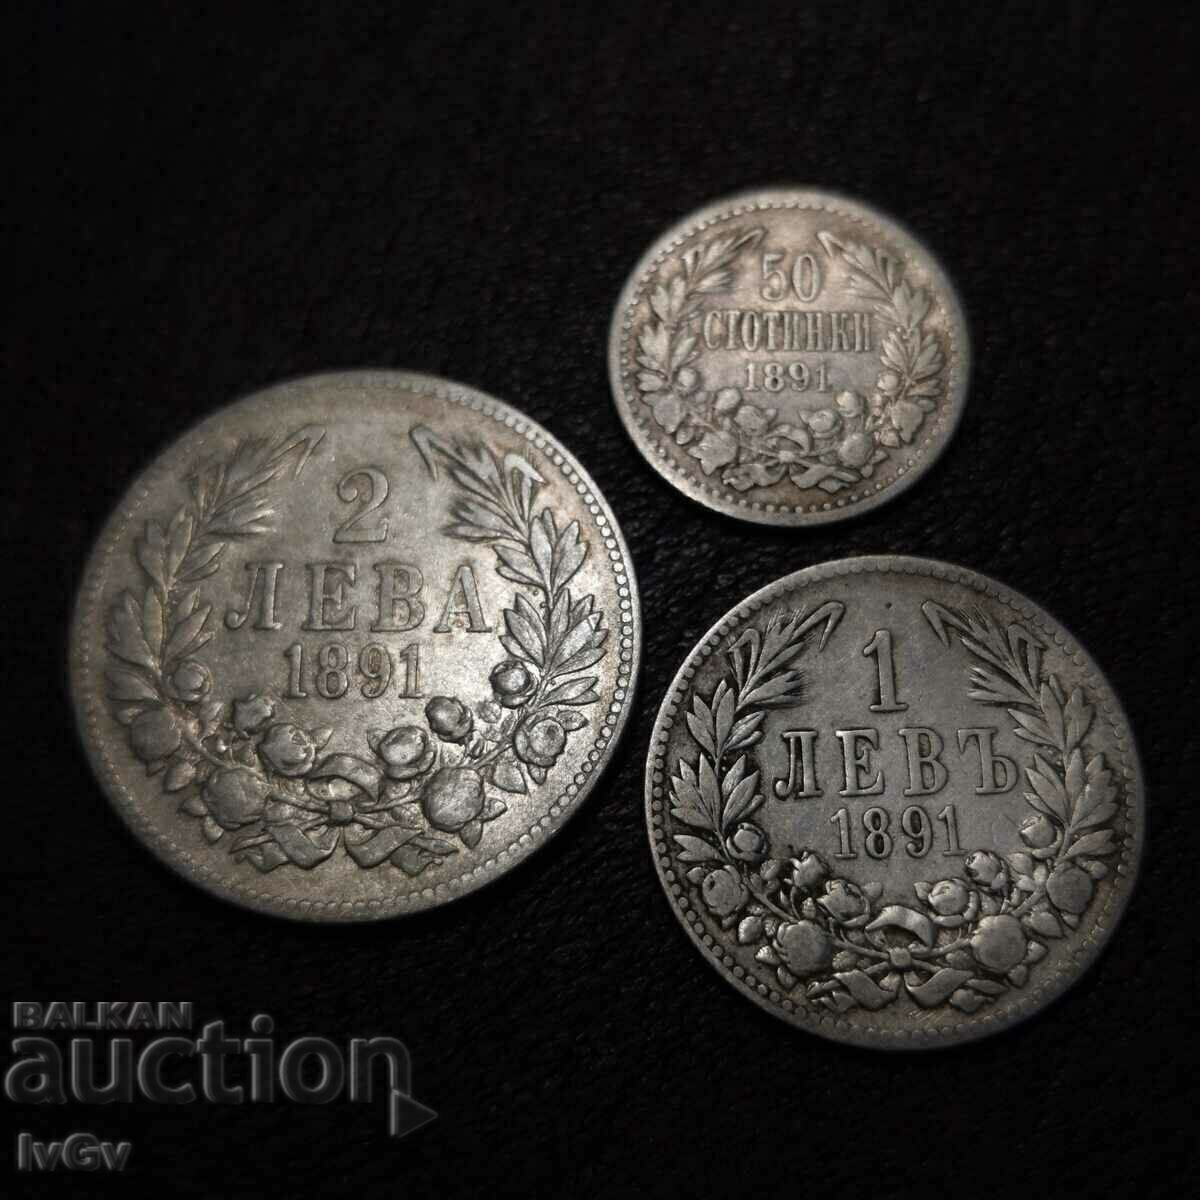 50 σεντς, 1 λέβα και 2 λέβα 1891